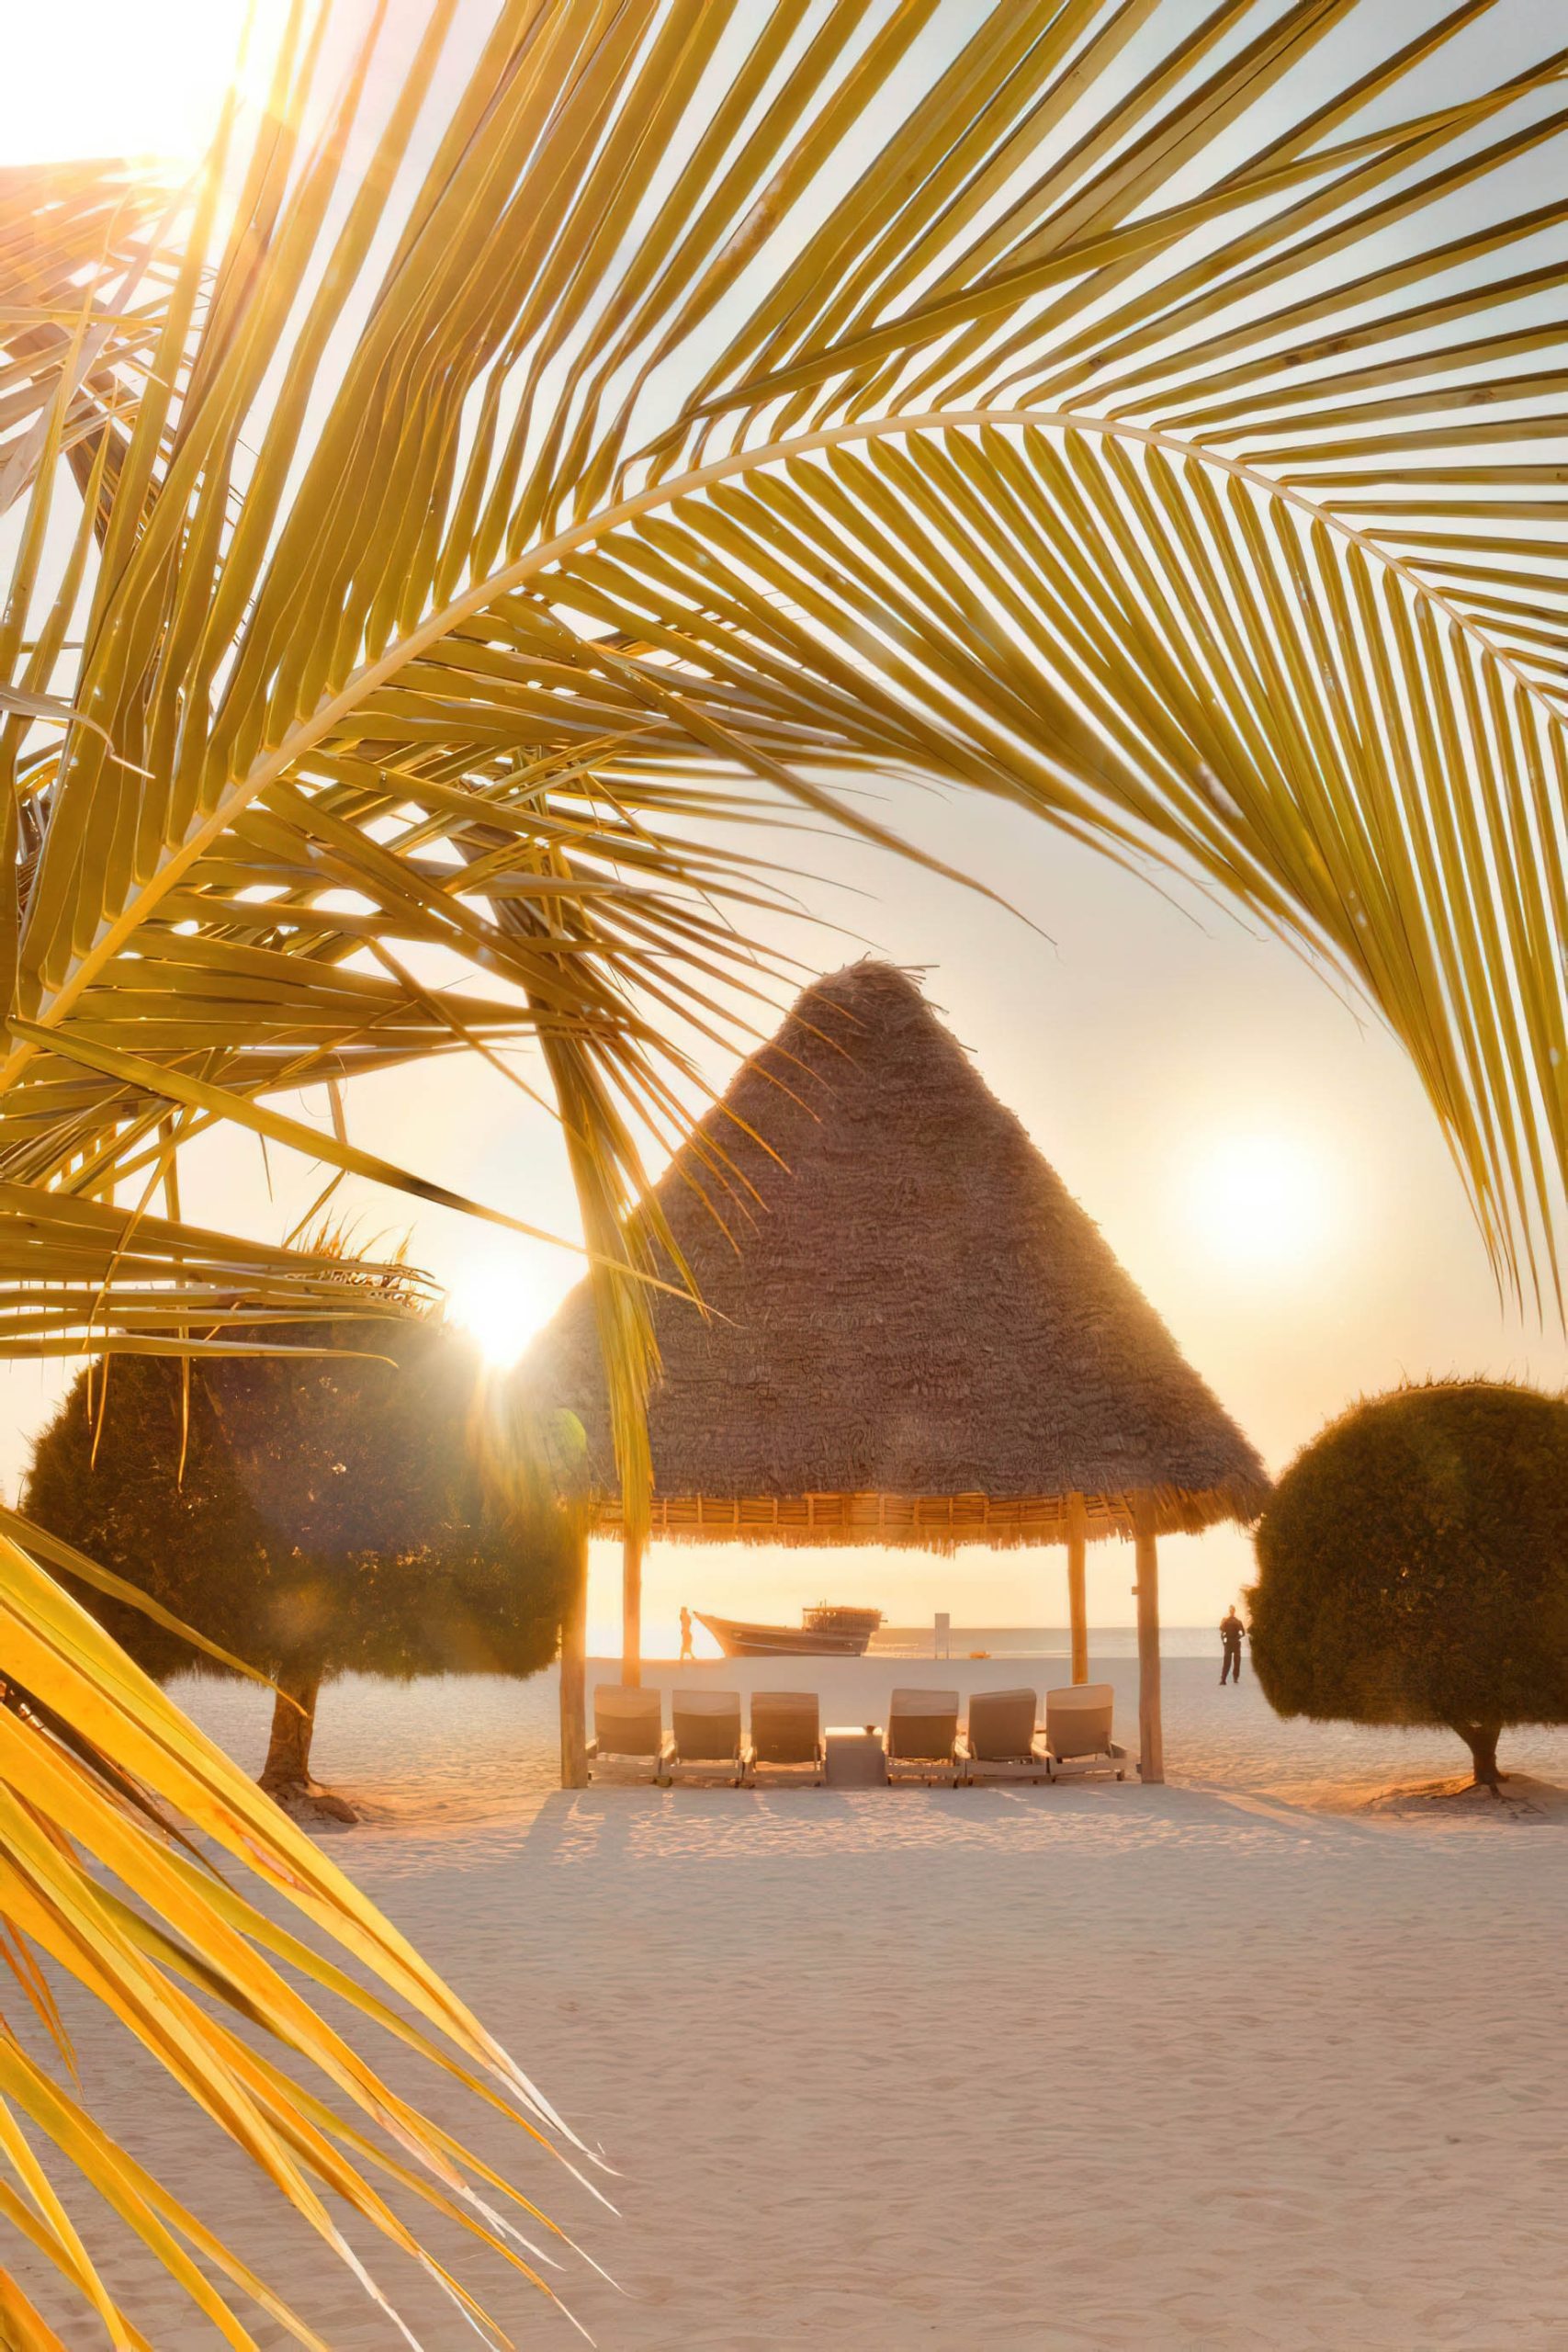 Gold Zanzibar Beach House & Spa Resort - Nungwi, Zanzibar, Tanzania - Beach Cabana Sunset